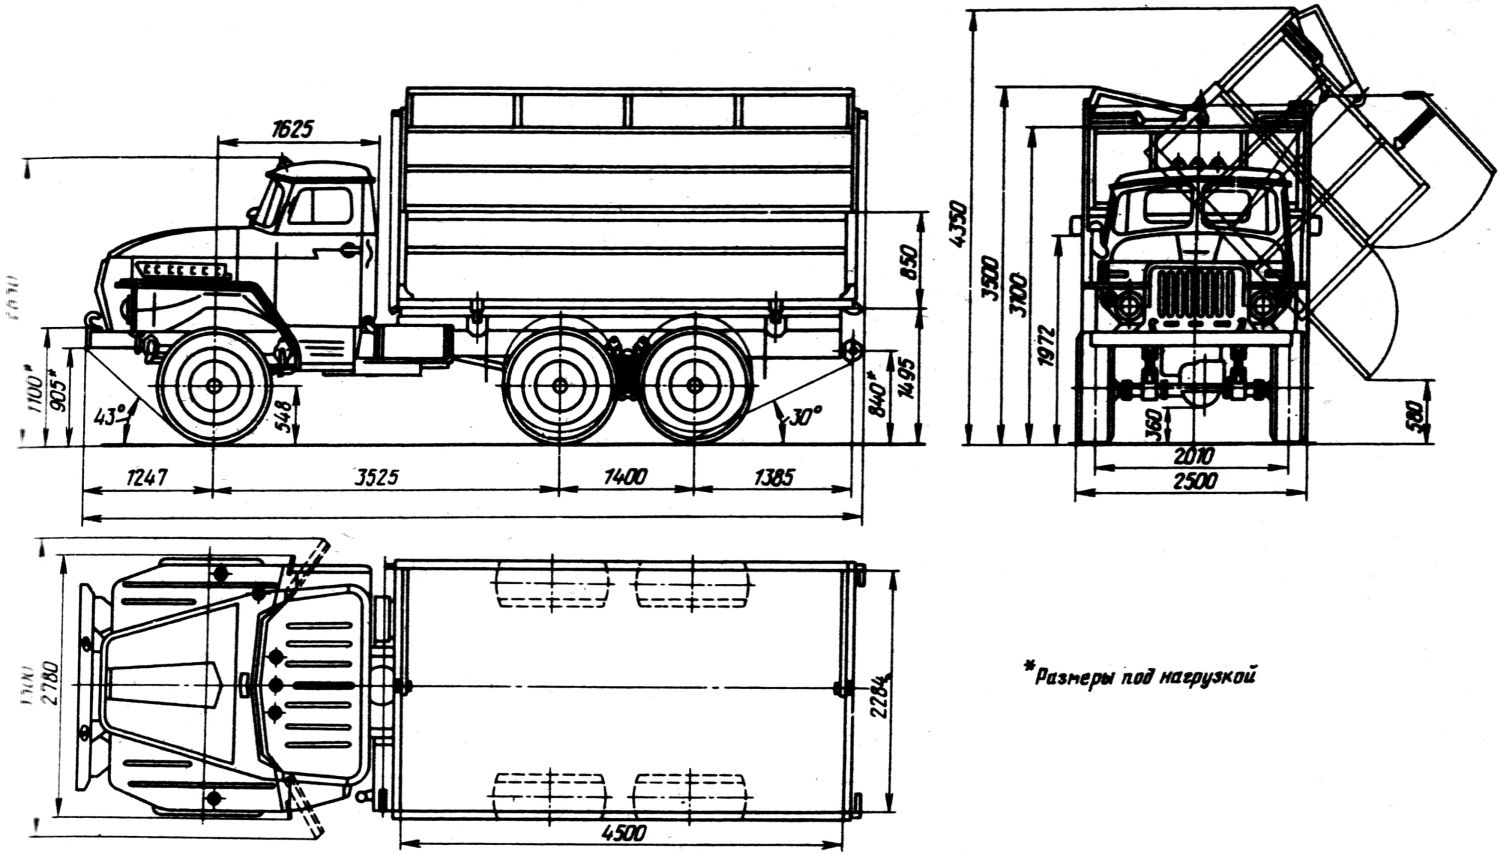 Ural-5557 blueprint